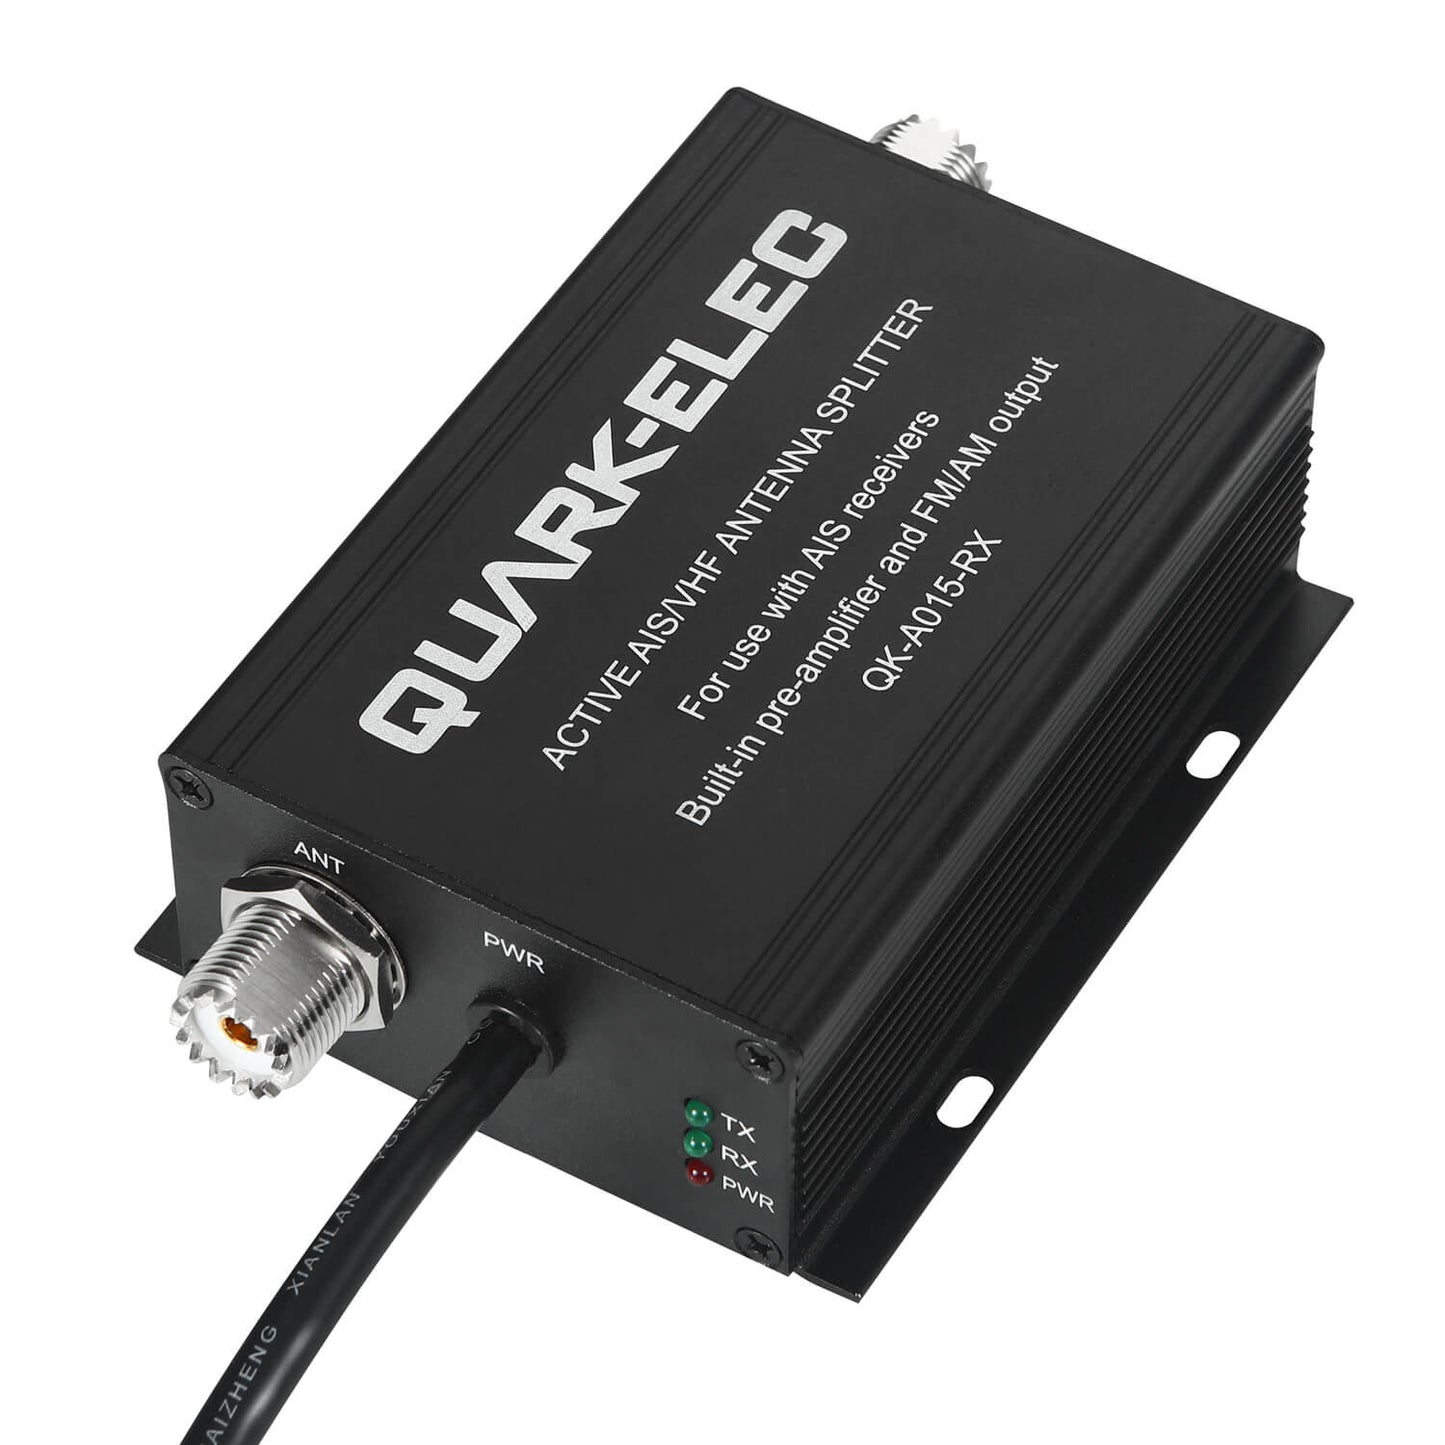 Quark-Elec Active VHF Splitter (for AIS receivers) - QK-A015-RX